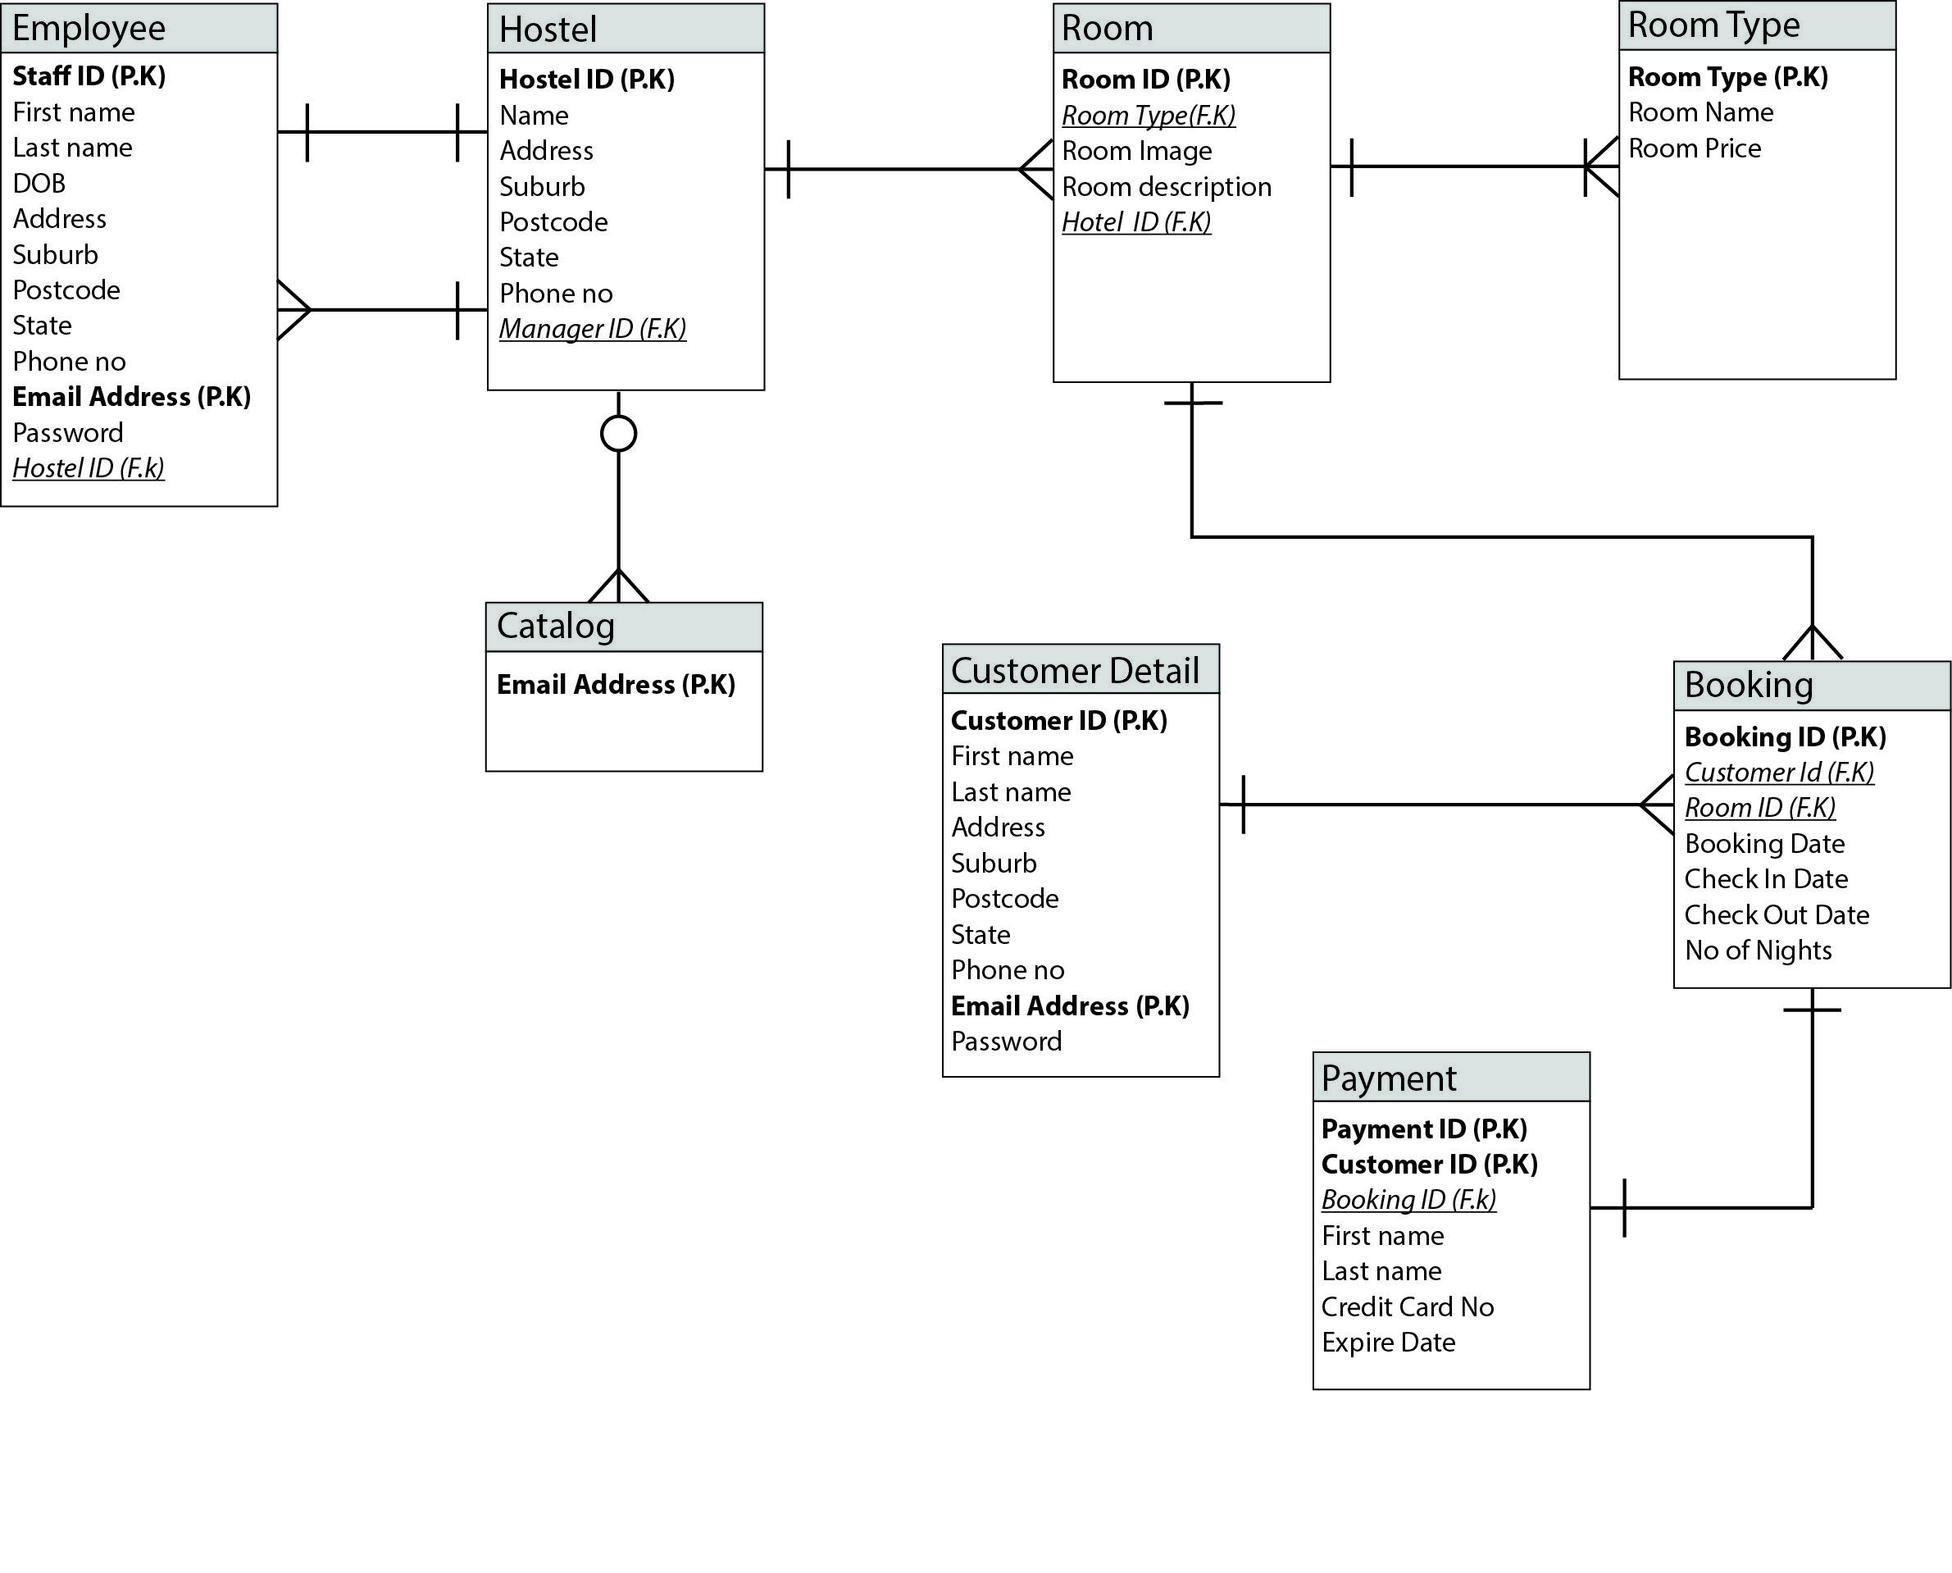 Online Hostel Management System Er Diagram - Database for Er Diagram Free Online